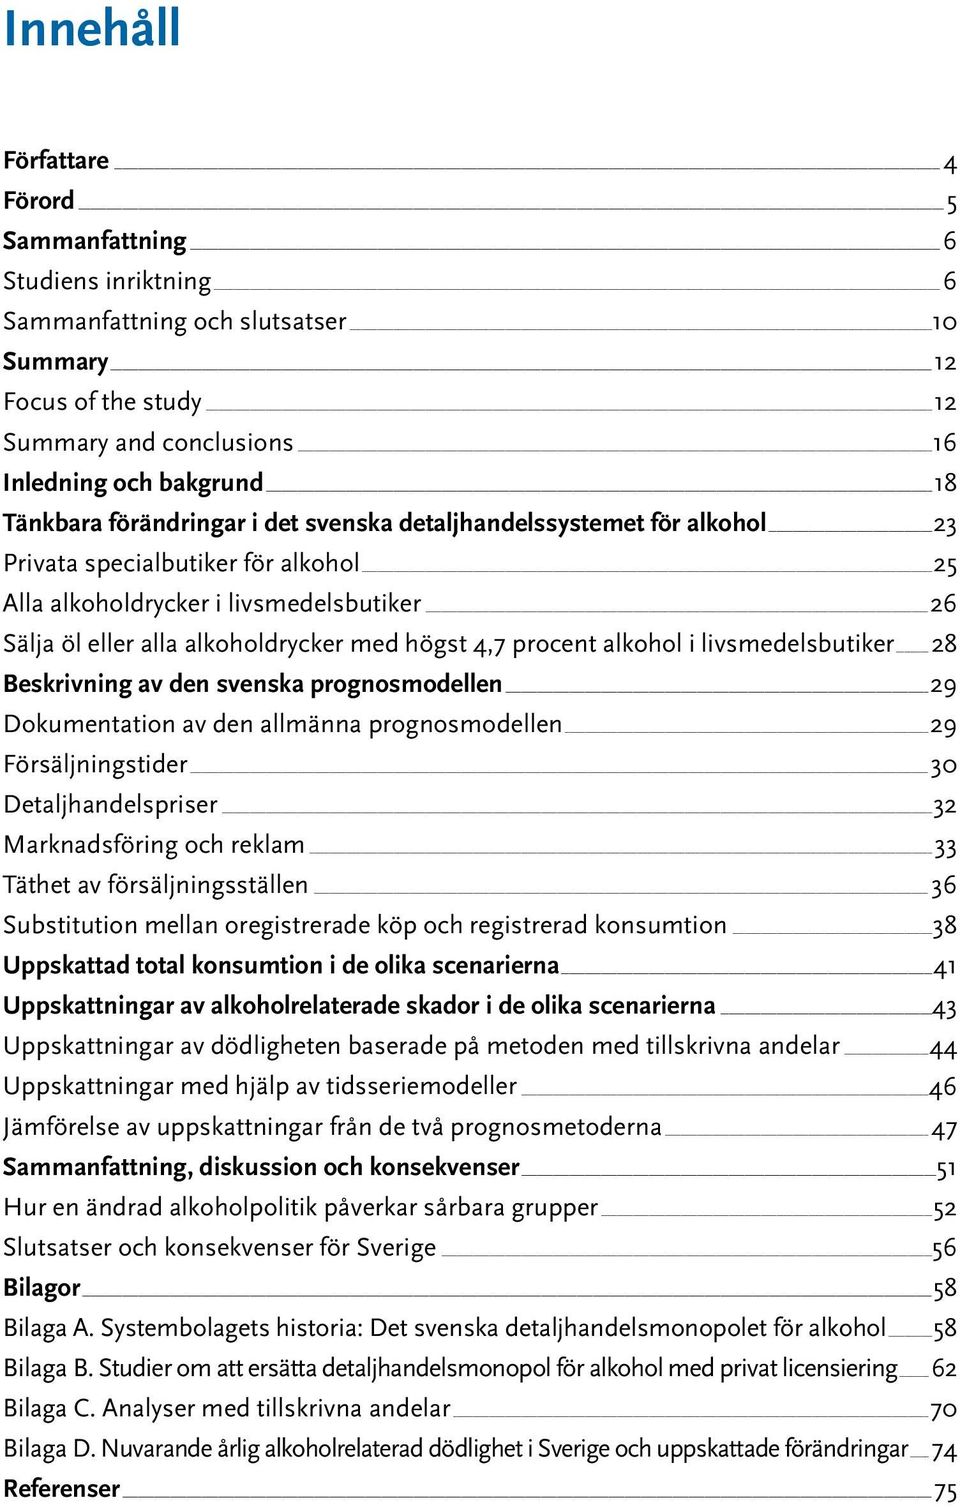 procent alkohol i livsmedelsbutiker 28 Beskrivning av den svenska prognosmodellen 29 Dokumentation av den allmänna prognosmodellen 29 Försäljningstider 30 Detaljhandelspriser 32 Marknadsföring och